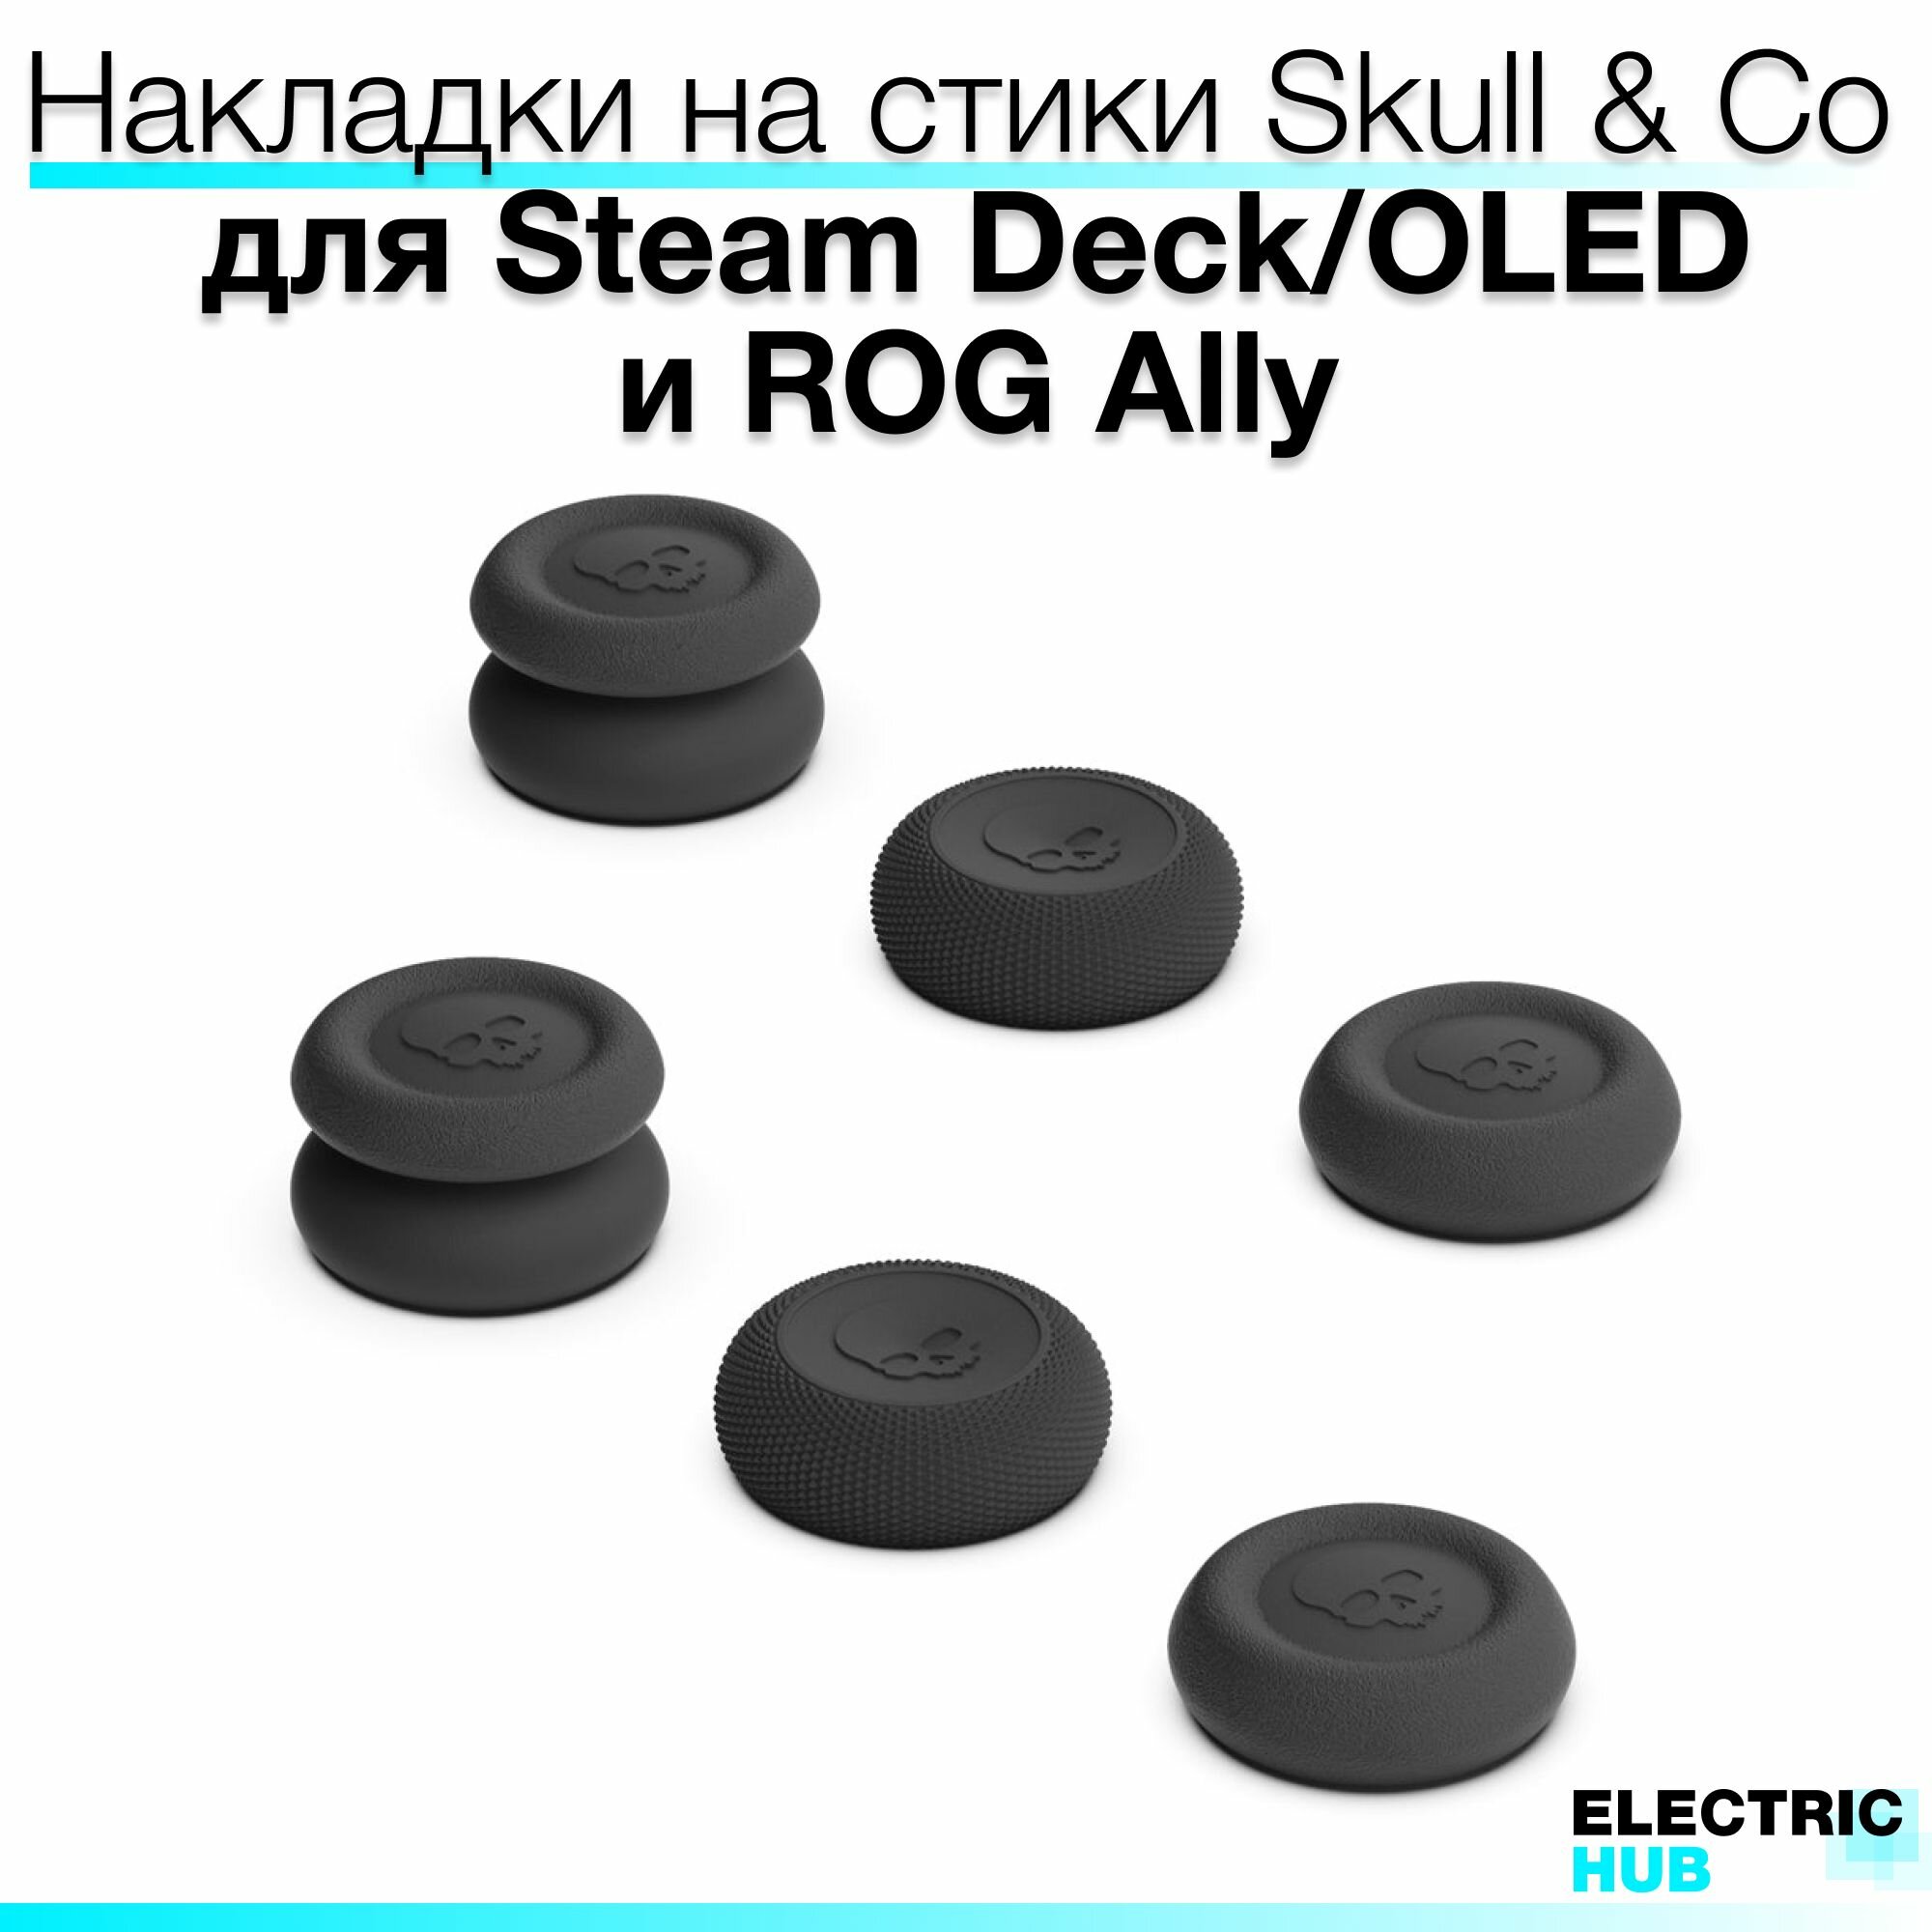 Премиум накладки Skull & Co на стики для консолей Steam Deck/OLED/ROG Ally, комплект из 6 штук, цвет Черный (Black)